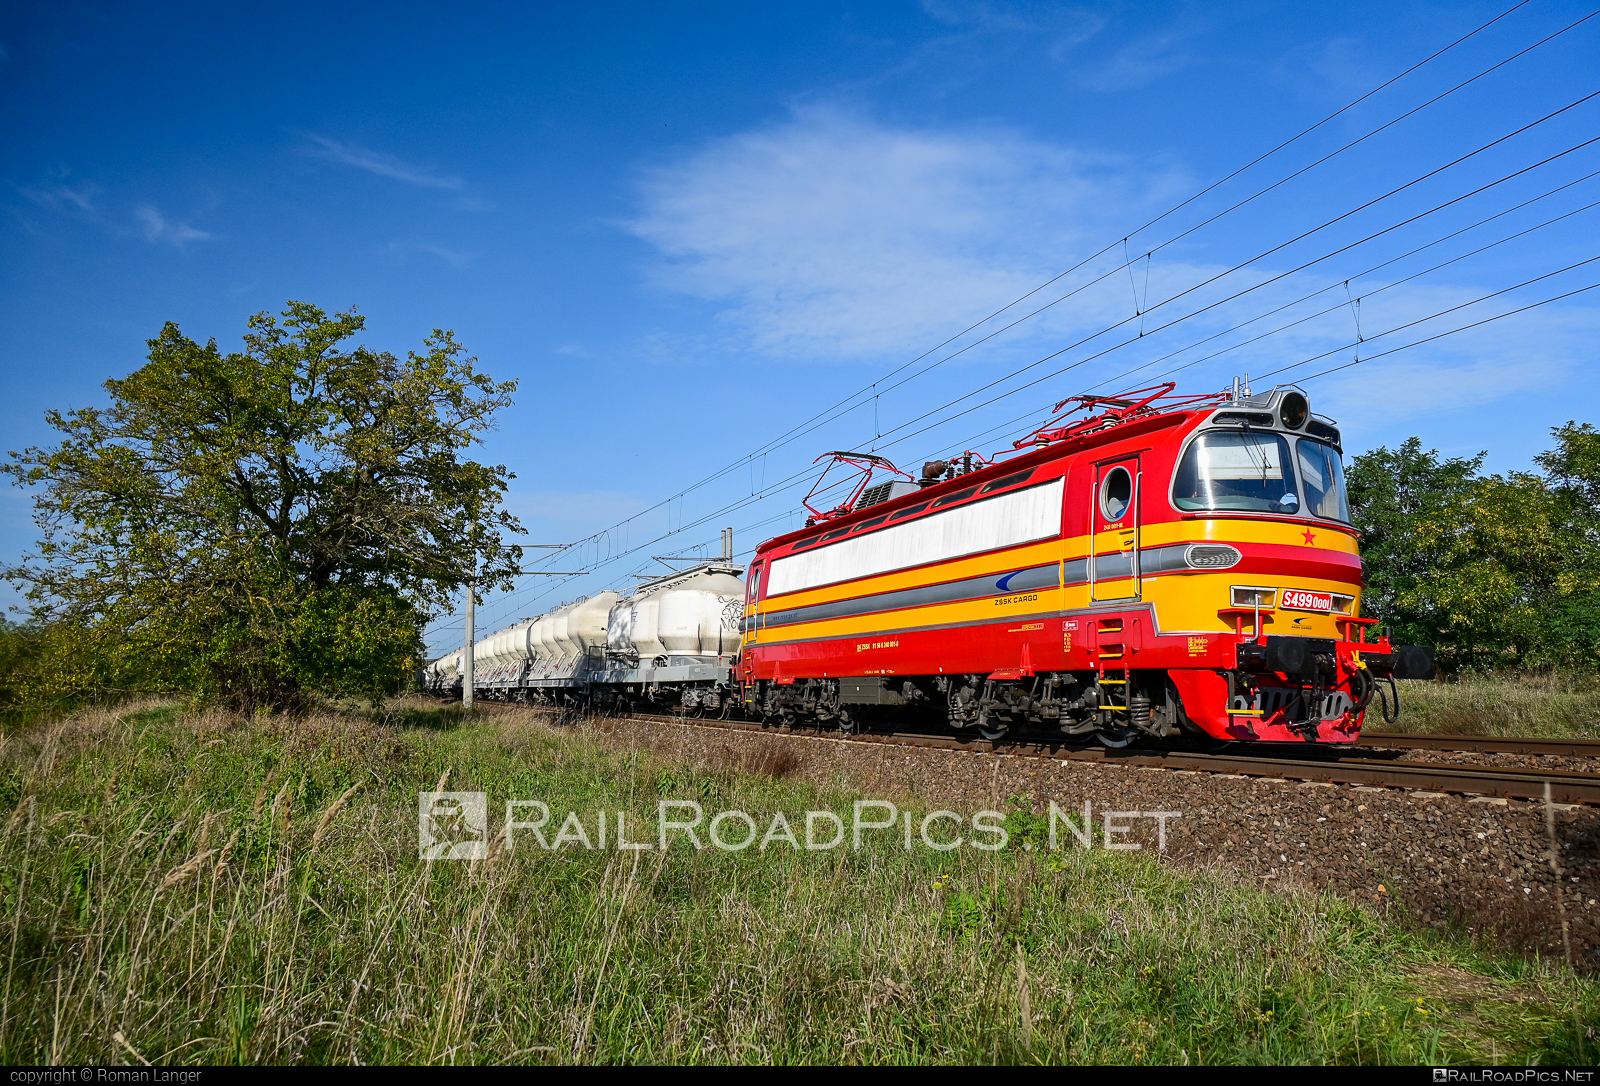 Škoda 47E - S4990001 operated by Železničná Spoločnost' Cargo Slovakia a.s. #ZeleznicnaSpolocnostCargoSlovakia #ZeleznicnaSpolocnostSlovensko #cementwagon #laminatka #locomotive240 #skoda #skoda47e #zssk #zsskcargo